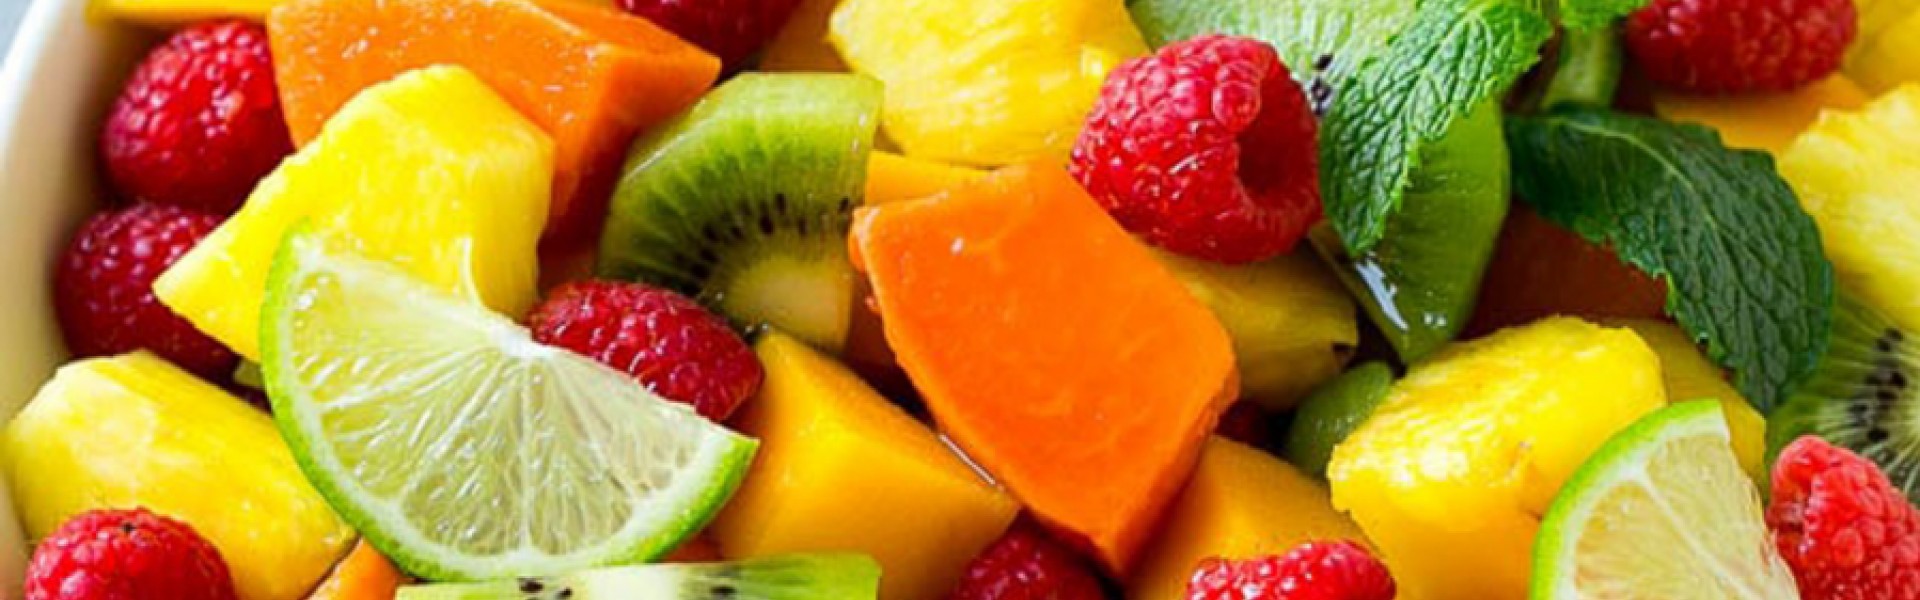 tropical-fruit-salad-Banner